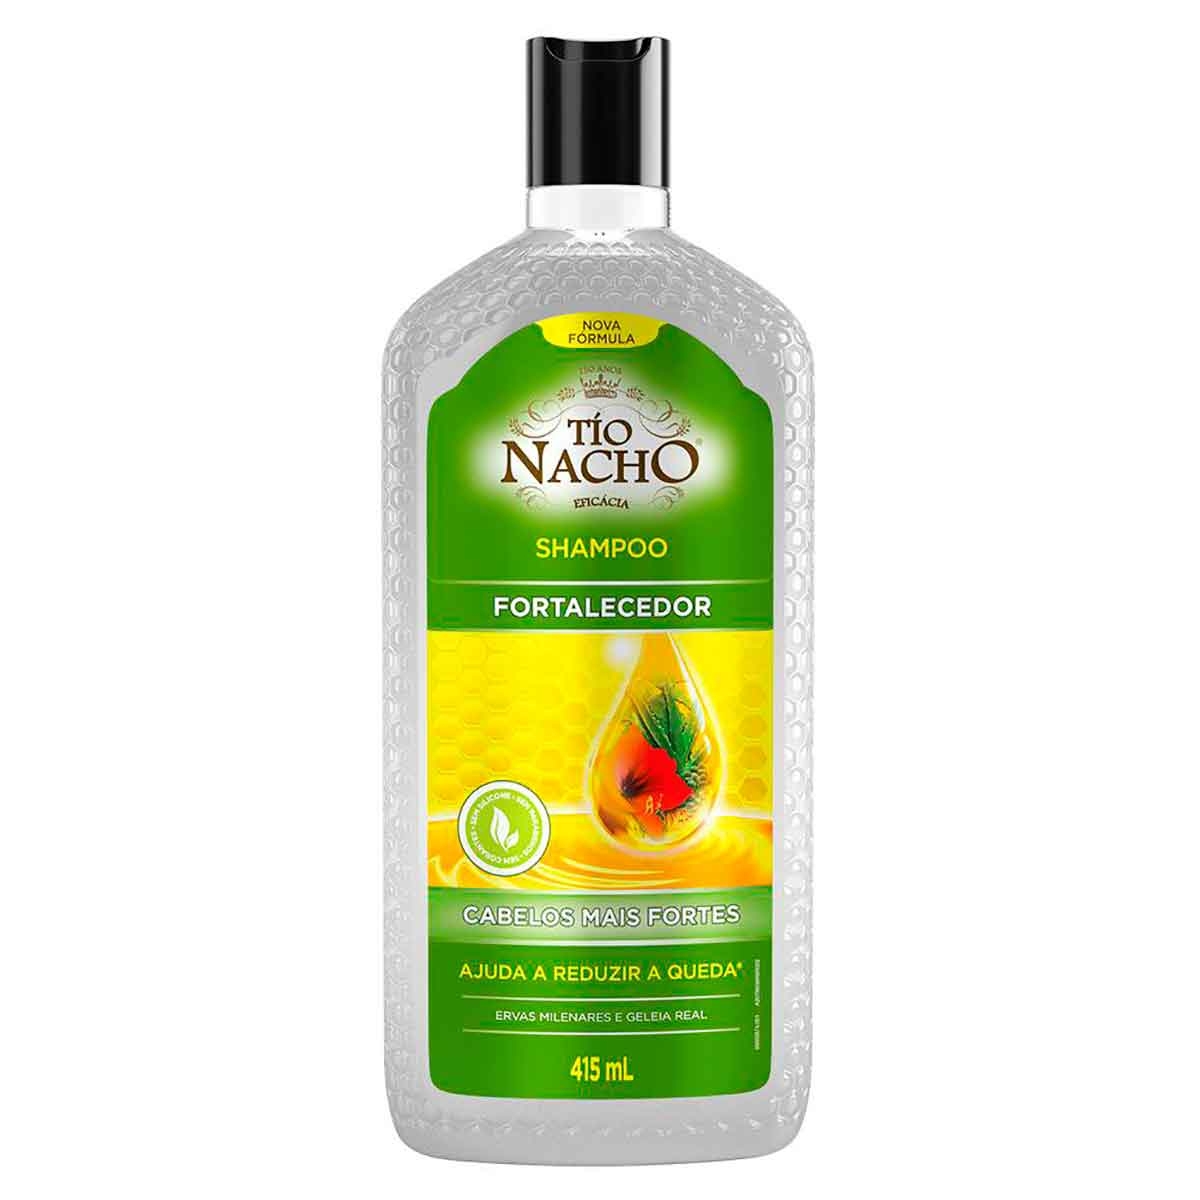 Shampoo Tio Nacho Fortalecedor Ervas Milenares com 415ml